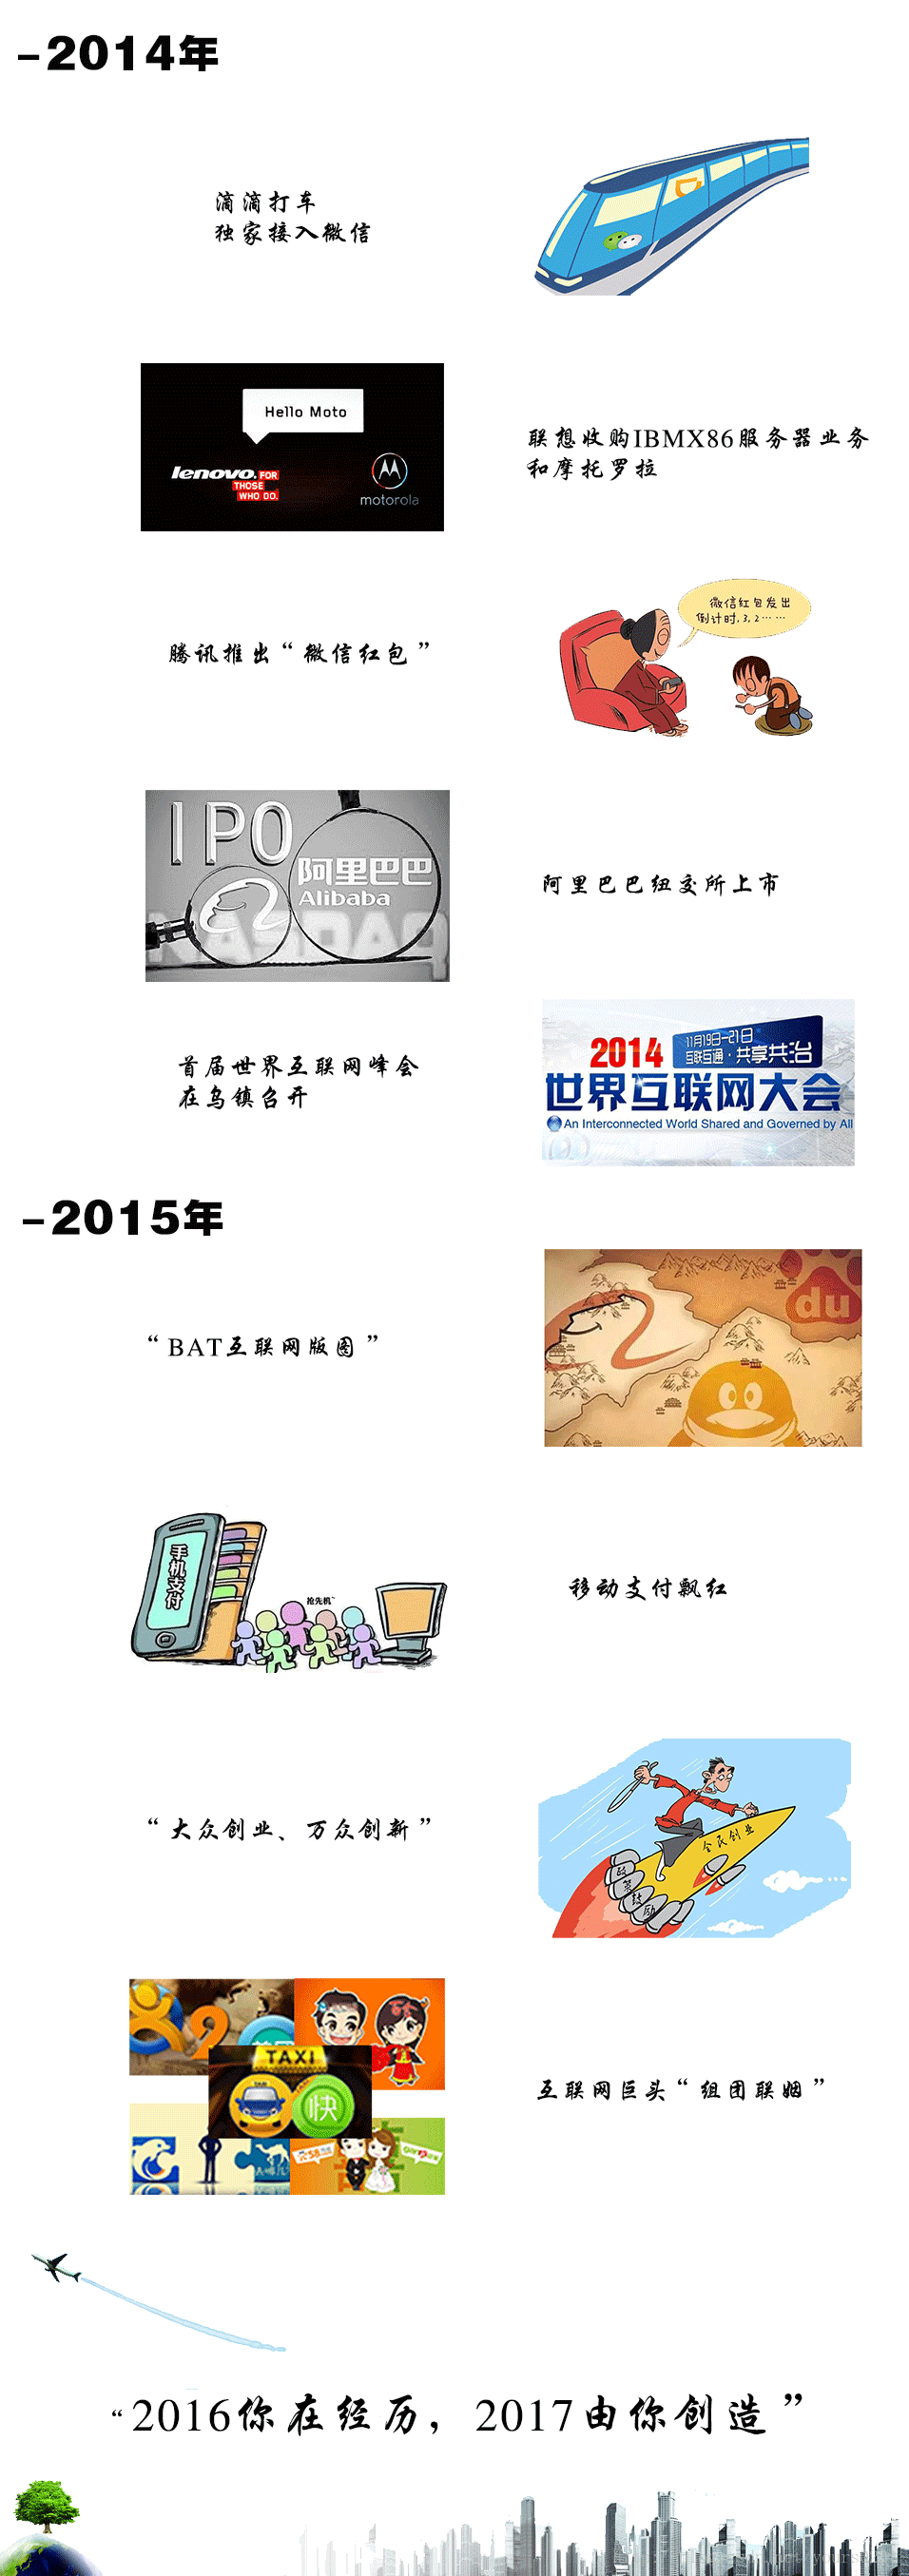 带你看看中国IT界/互联网这15年来翻天覆地的变化与进程4